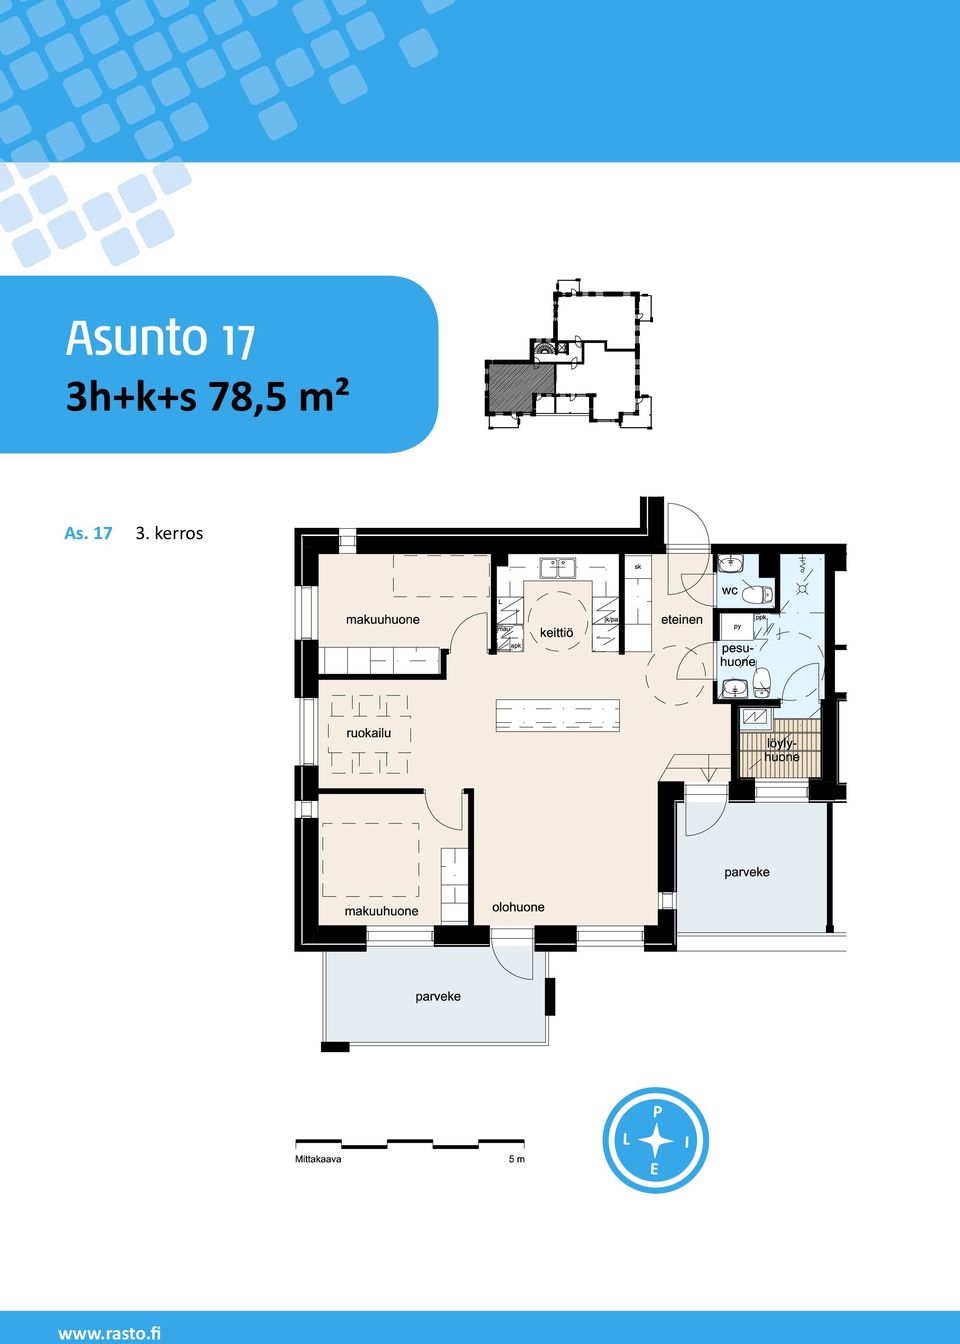 78,5 m² As.